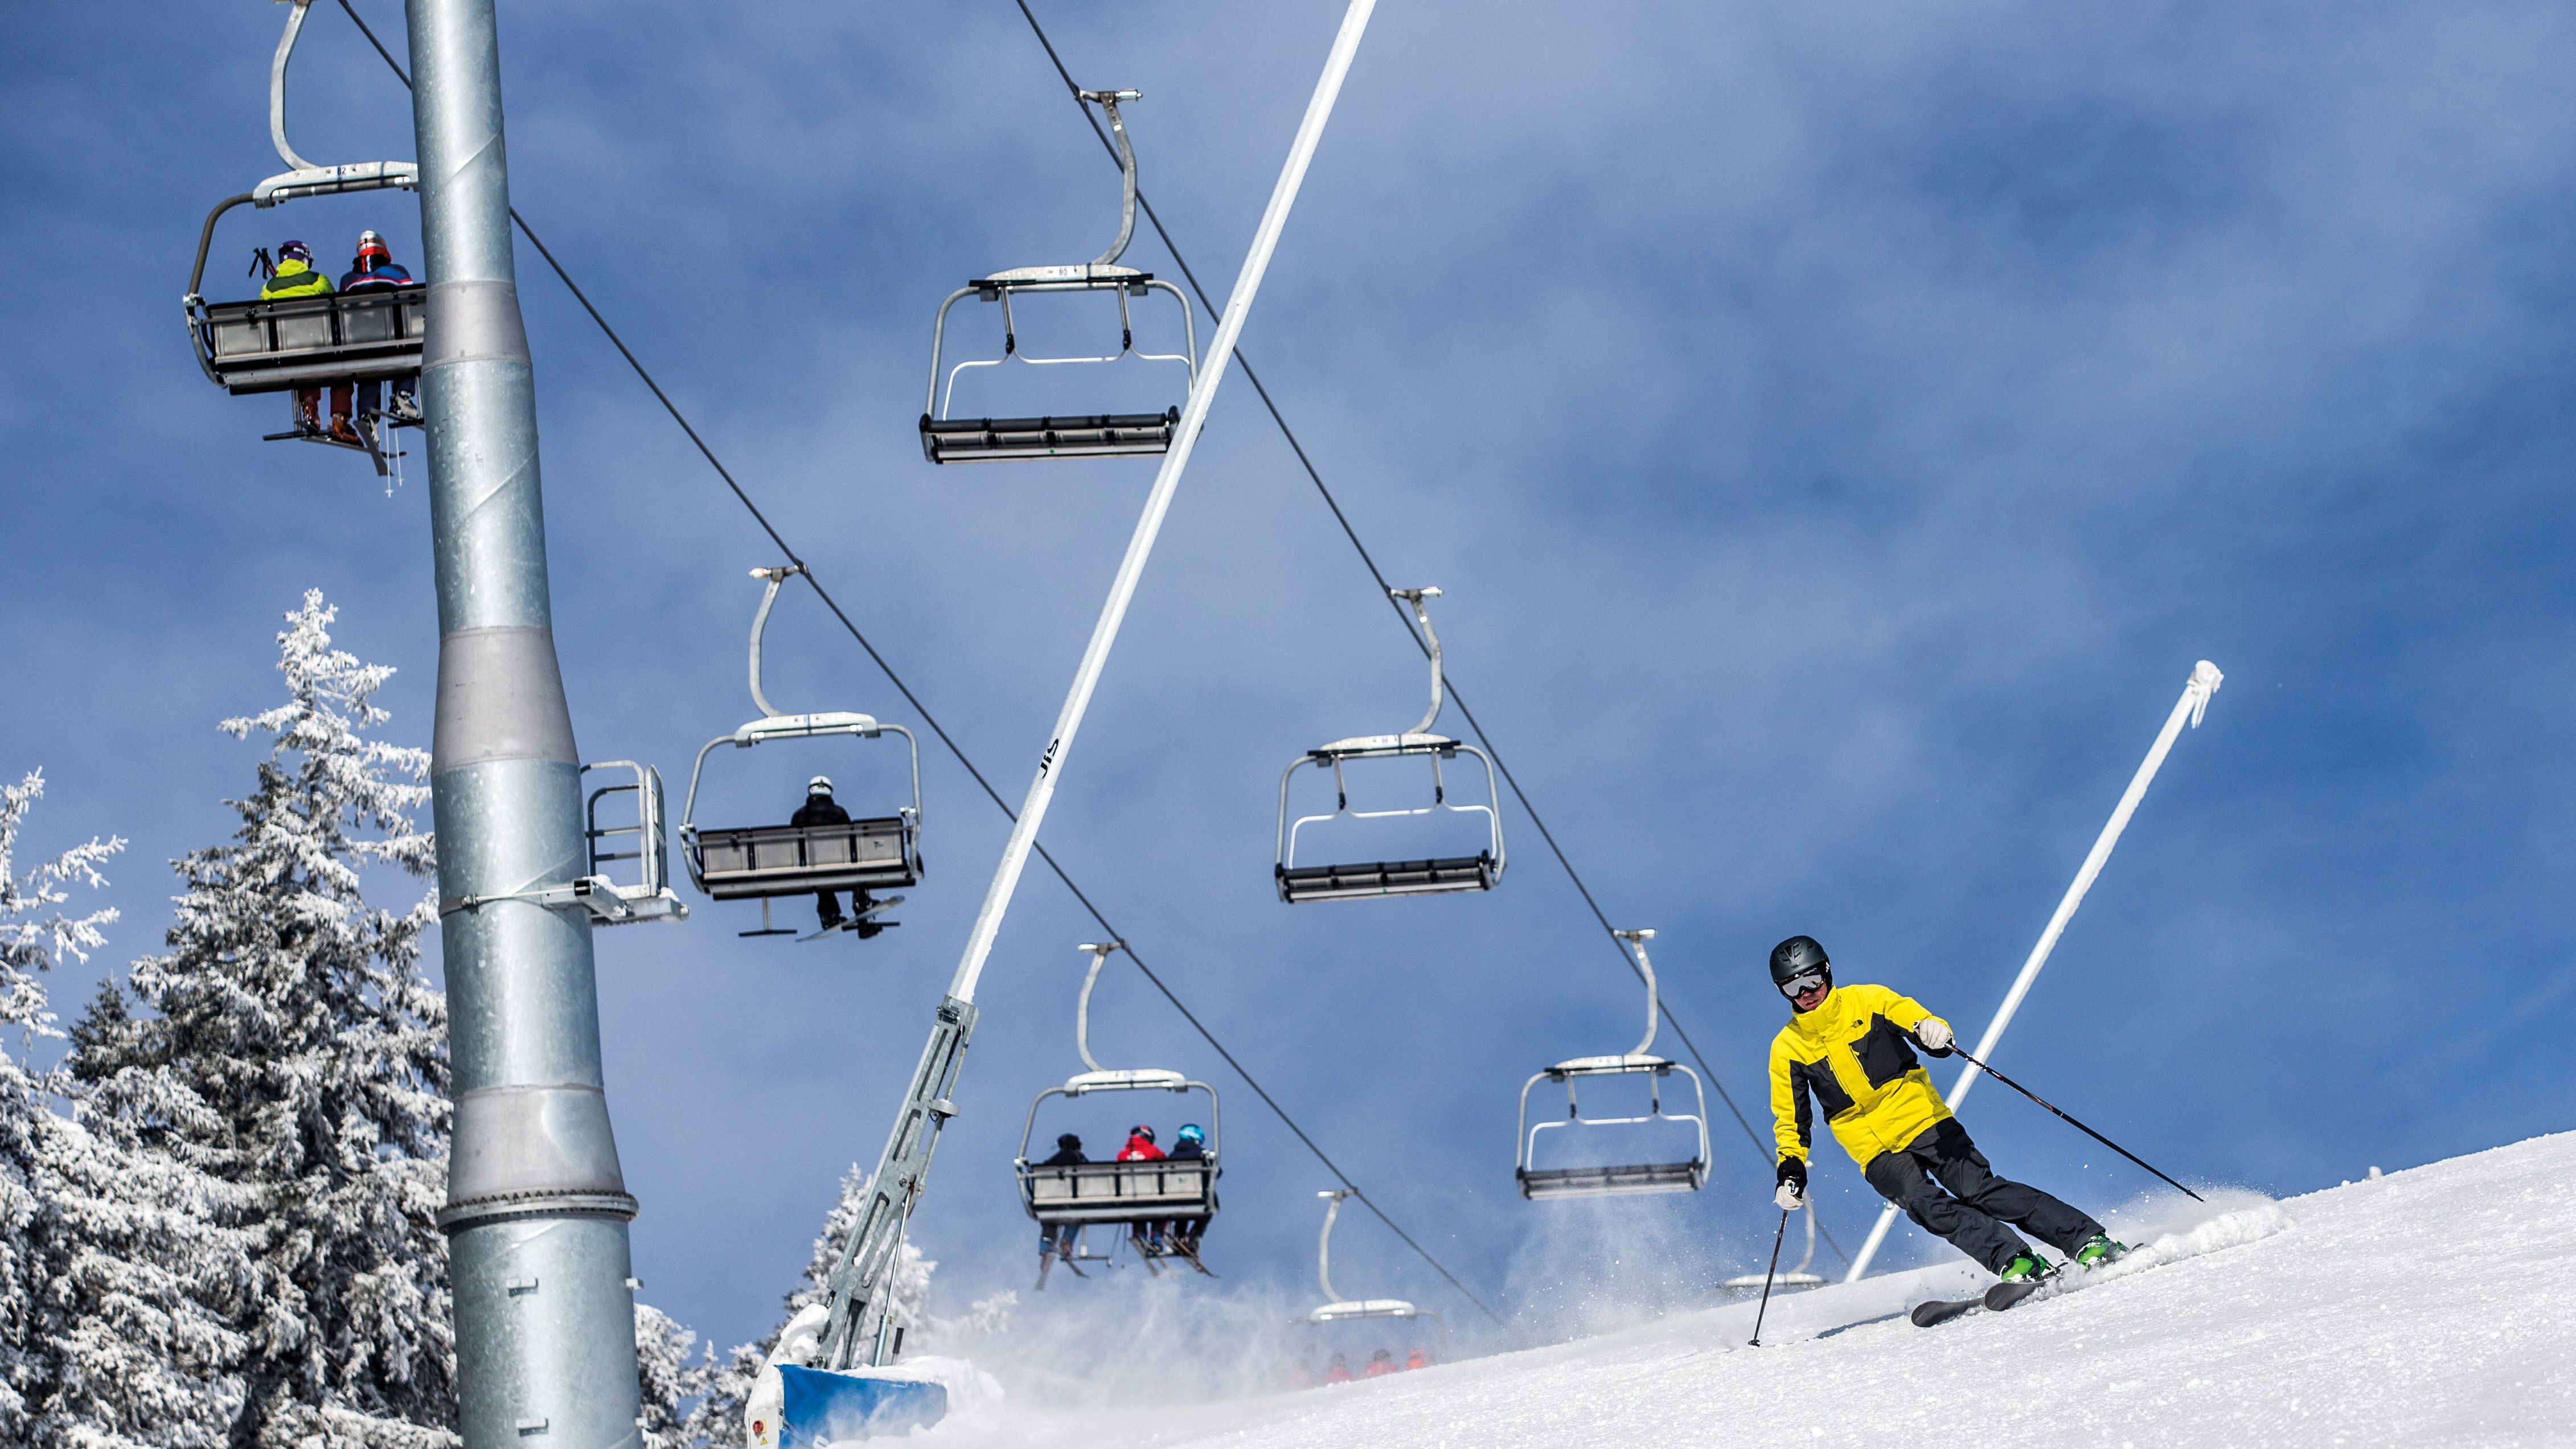 Het International Report on Snow & Mountain Tourism geeft een goed inzicht in de wintersportwereld